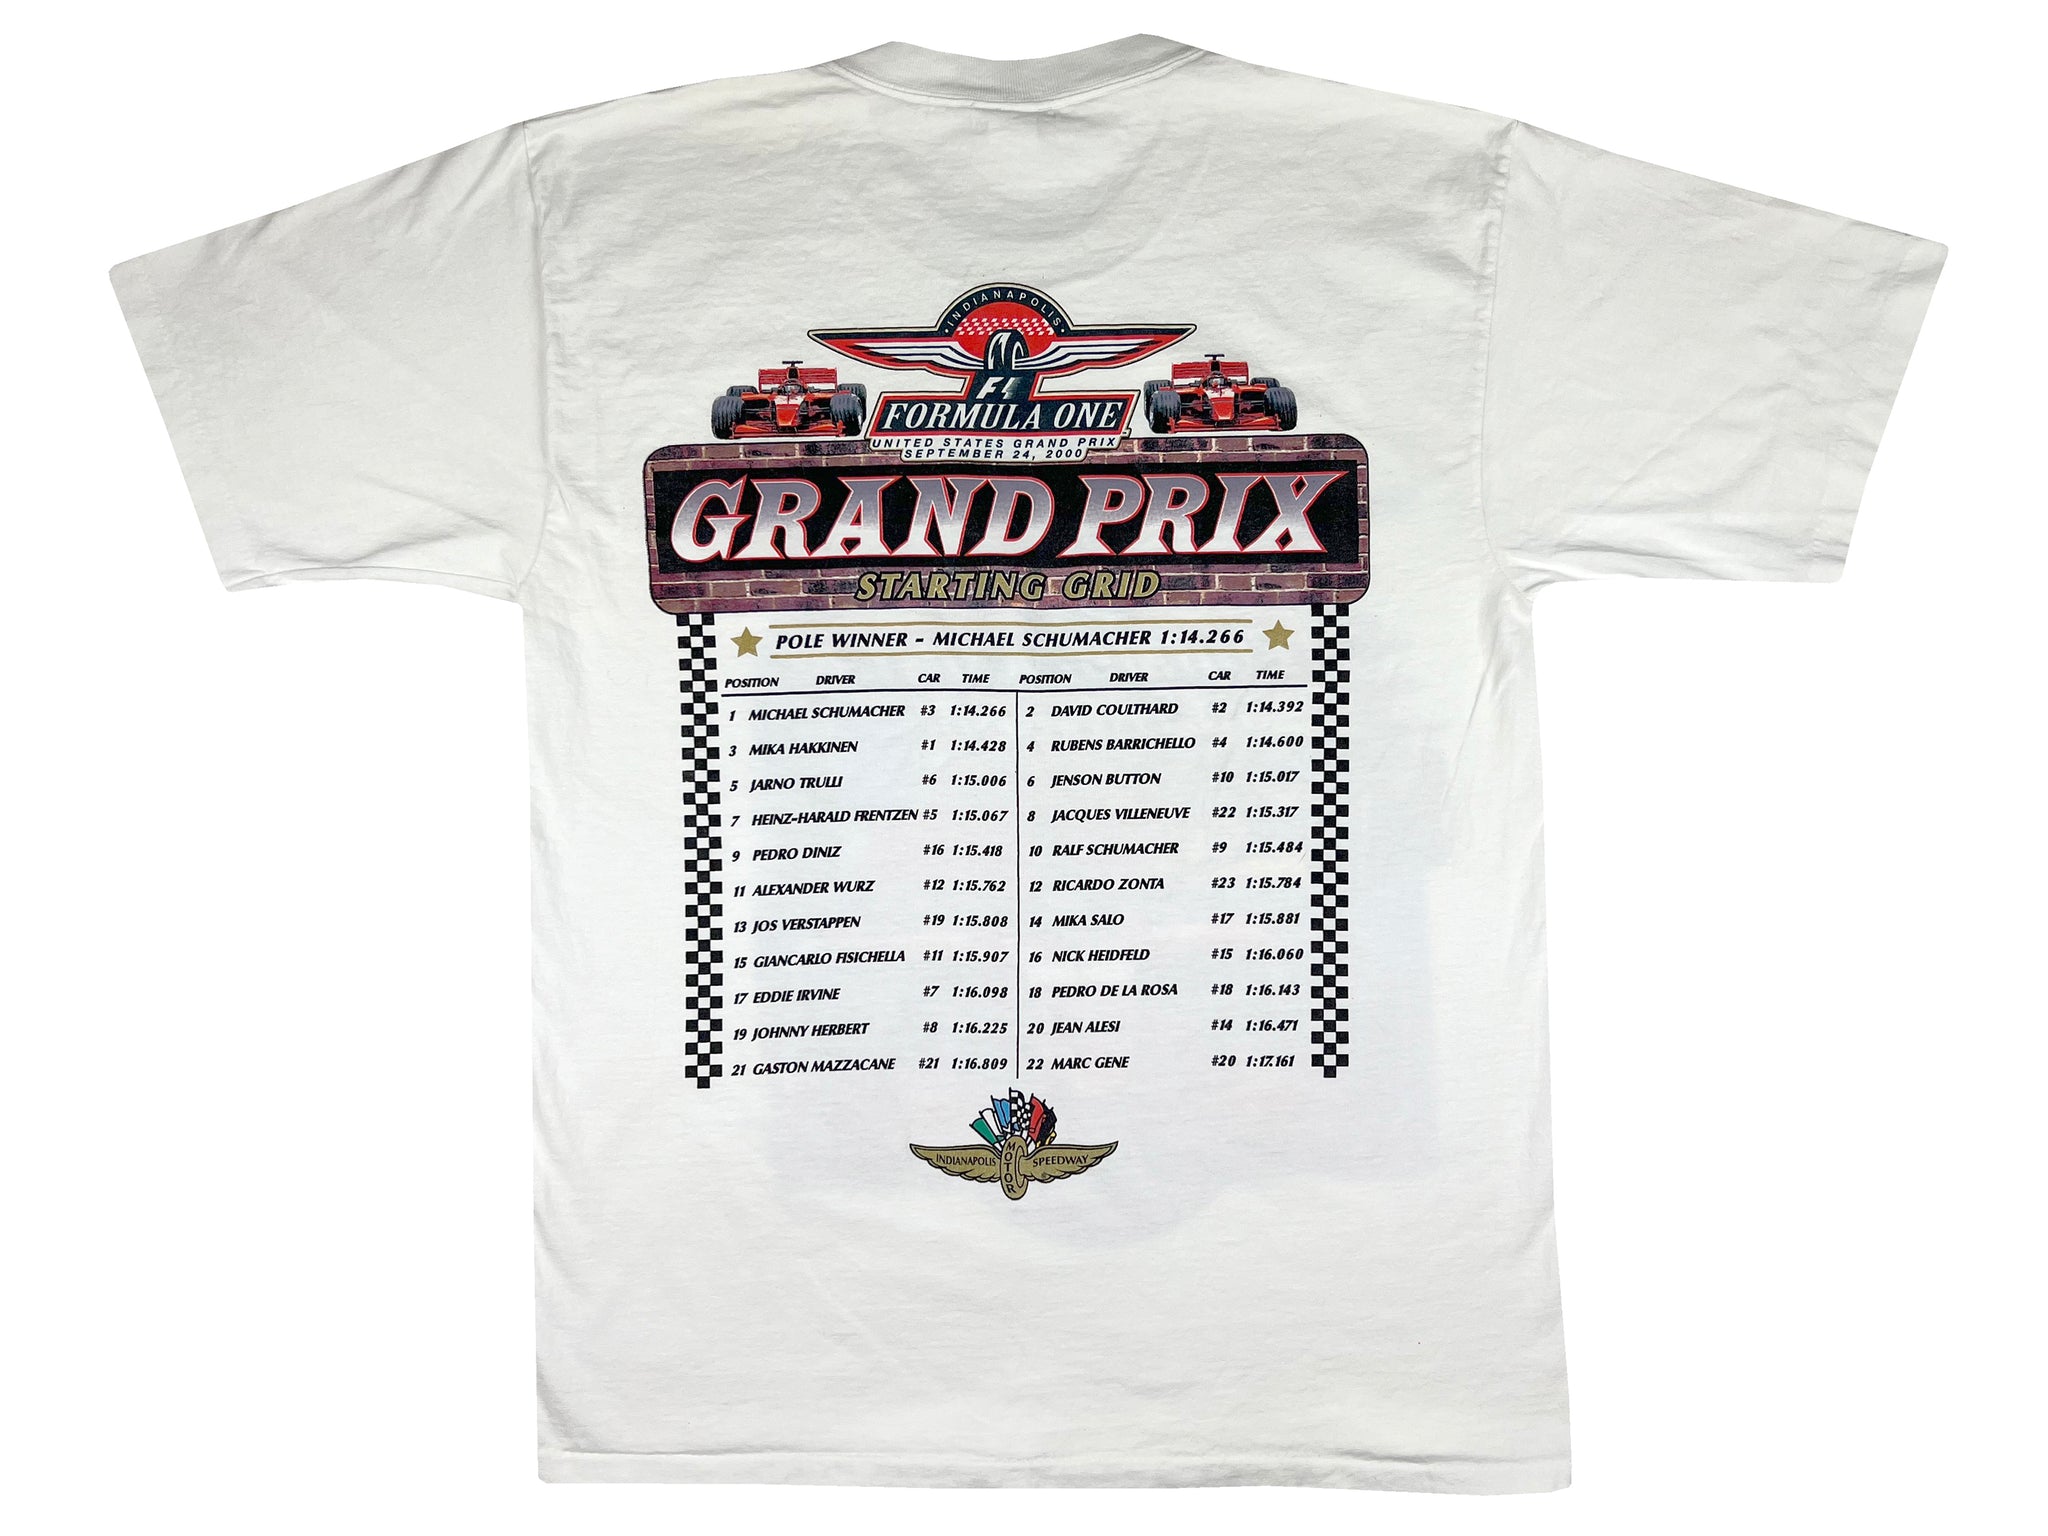 Formula One US Grand Prix 2000 T-Shirt